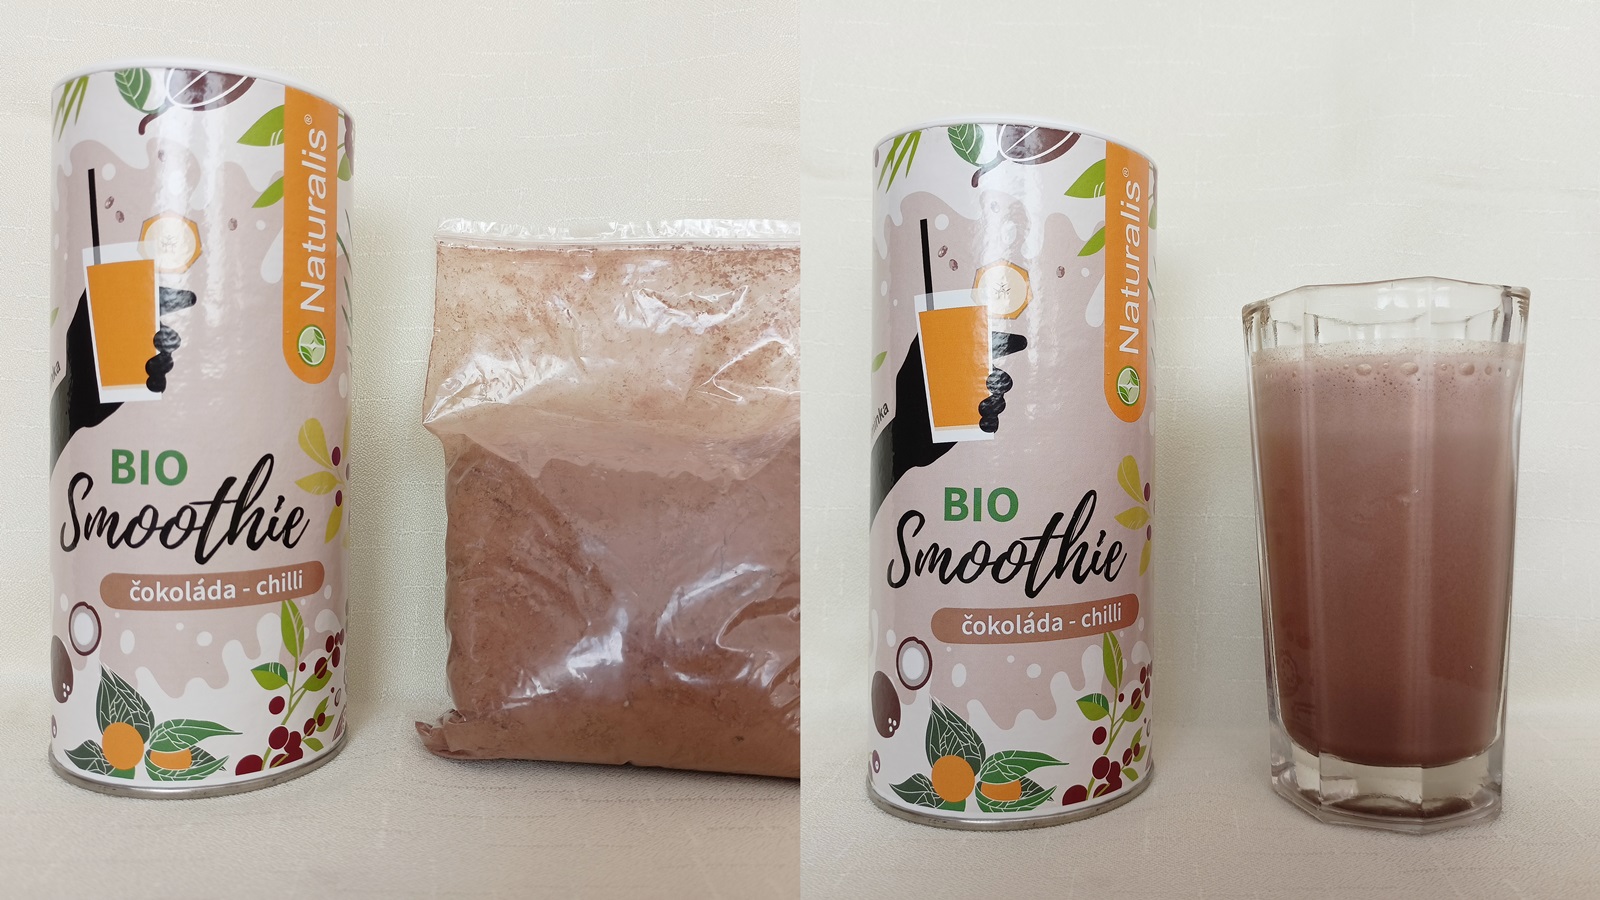 Recenze: Vyzkoušeli jsme tři nejprodávanější smoothies od Naturalis